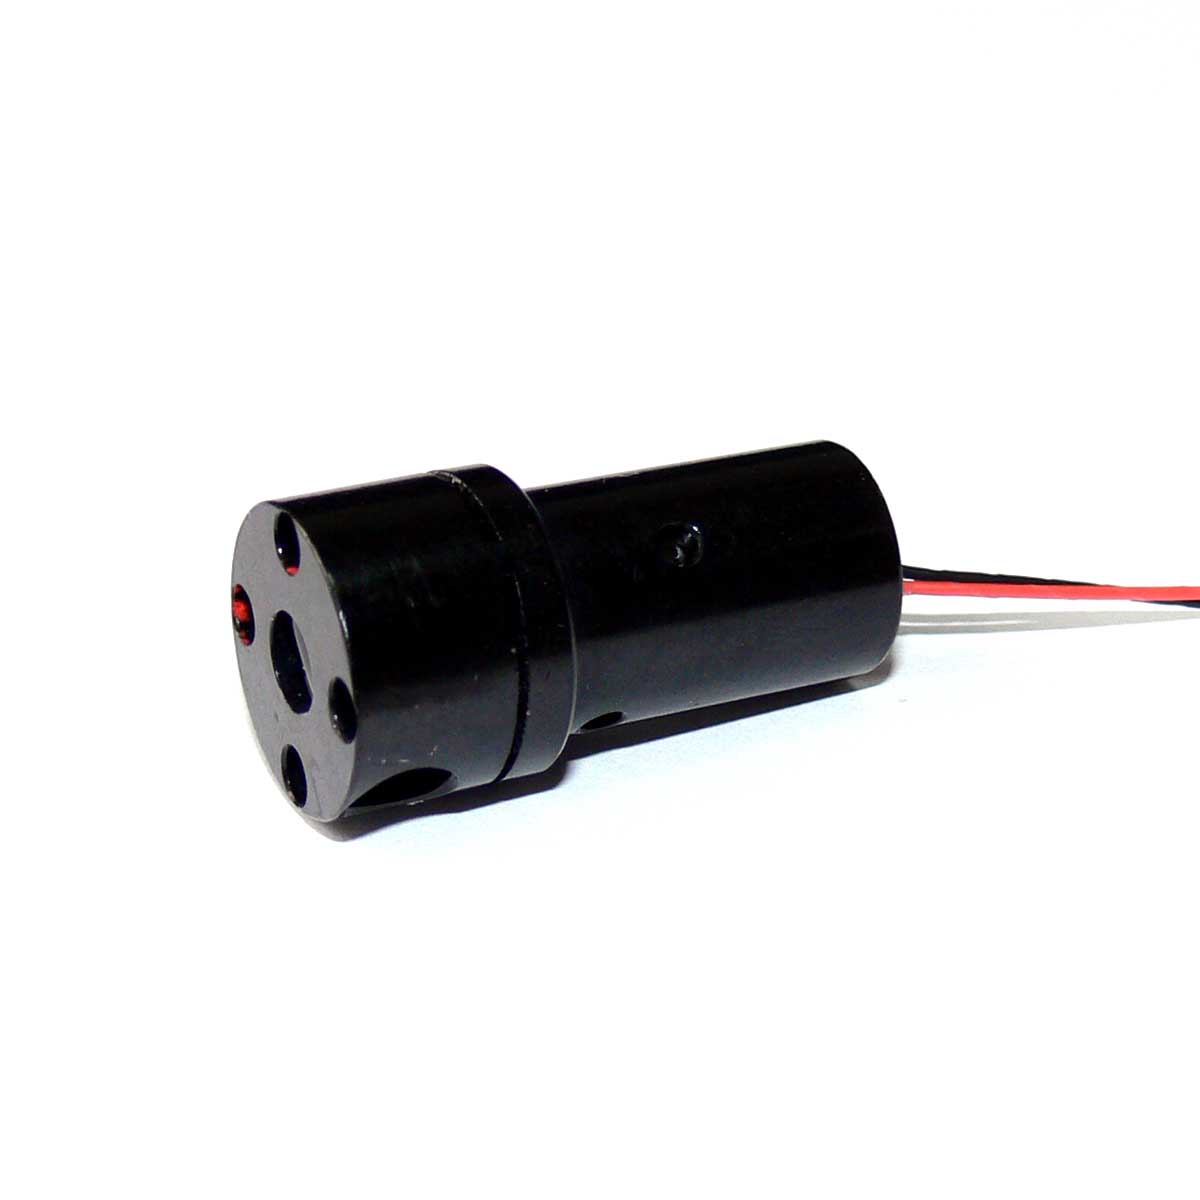 Linea rossa a 360 gradi laser per dispositivo di misurazione laser e strumenti di allineamento laser